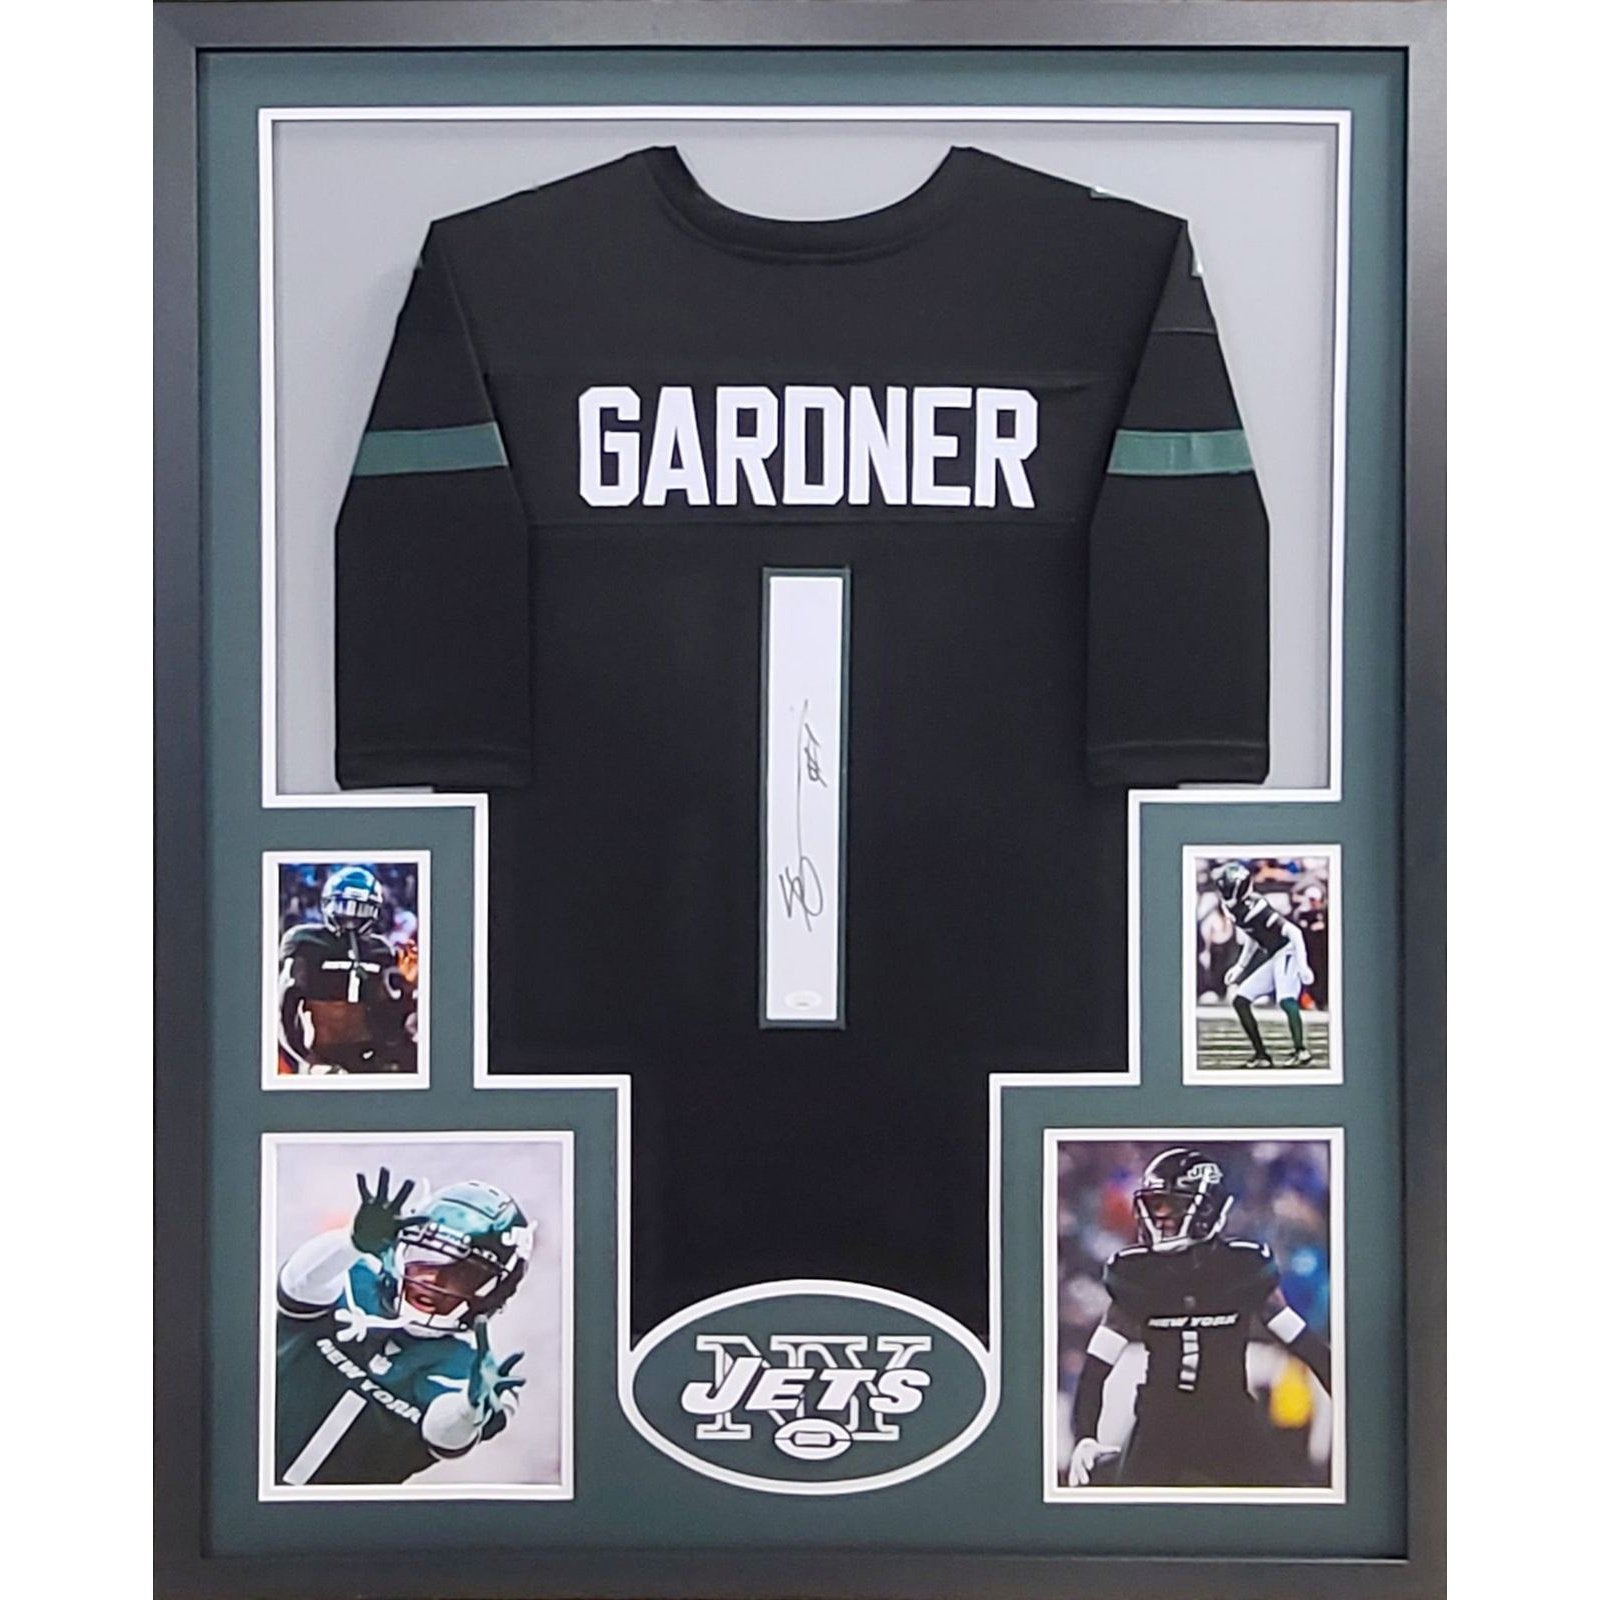 Sauce Gardner Signed Framed Jersey JSA Autographed New York Jets